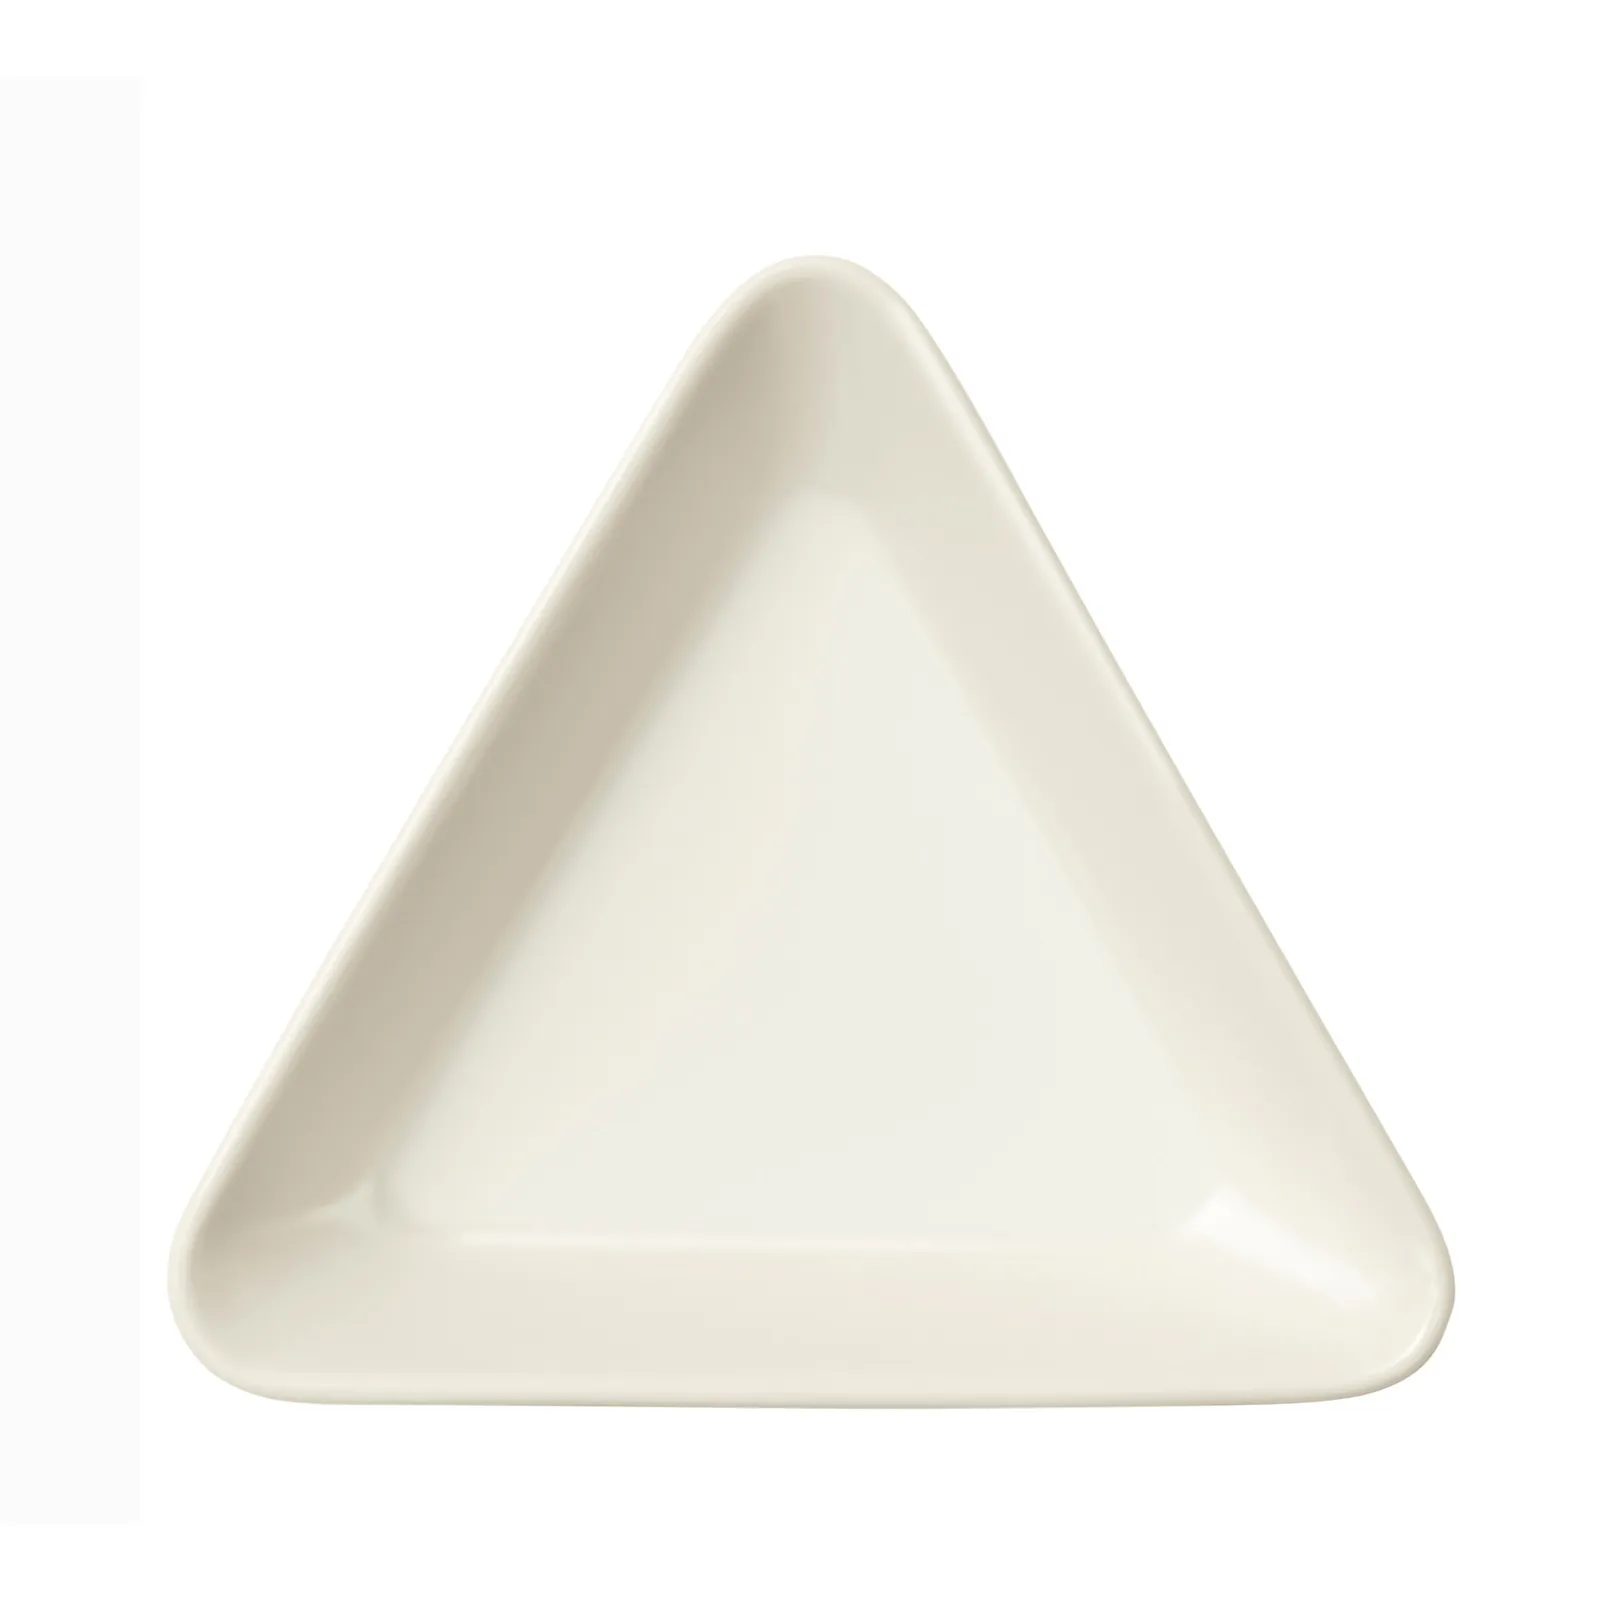 Iittala Teema dish triangle 12cm white